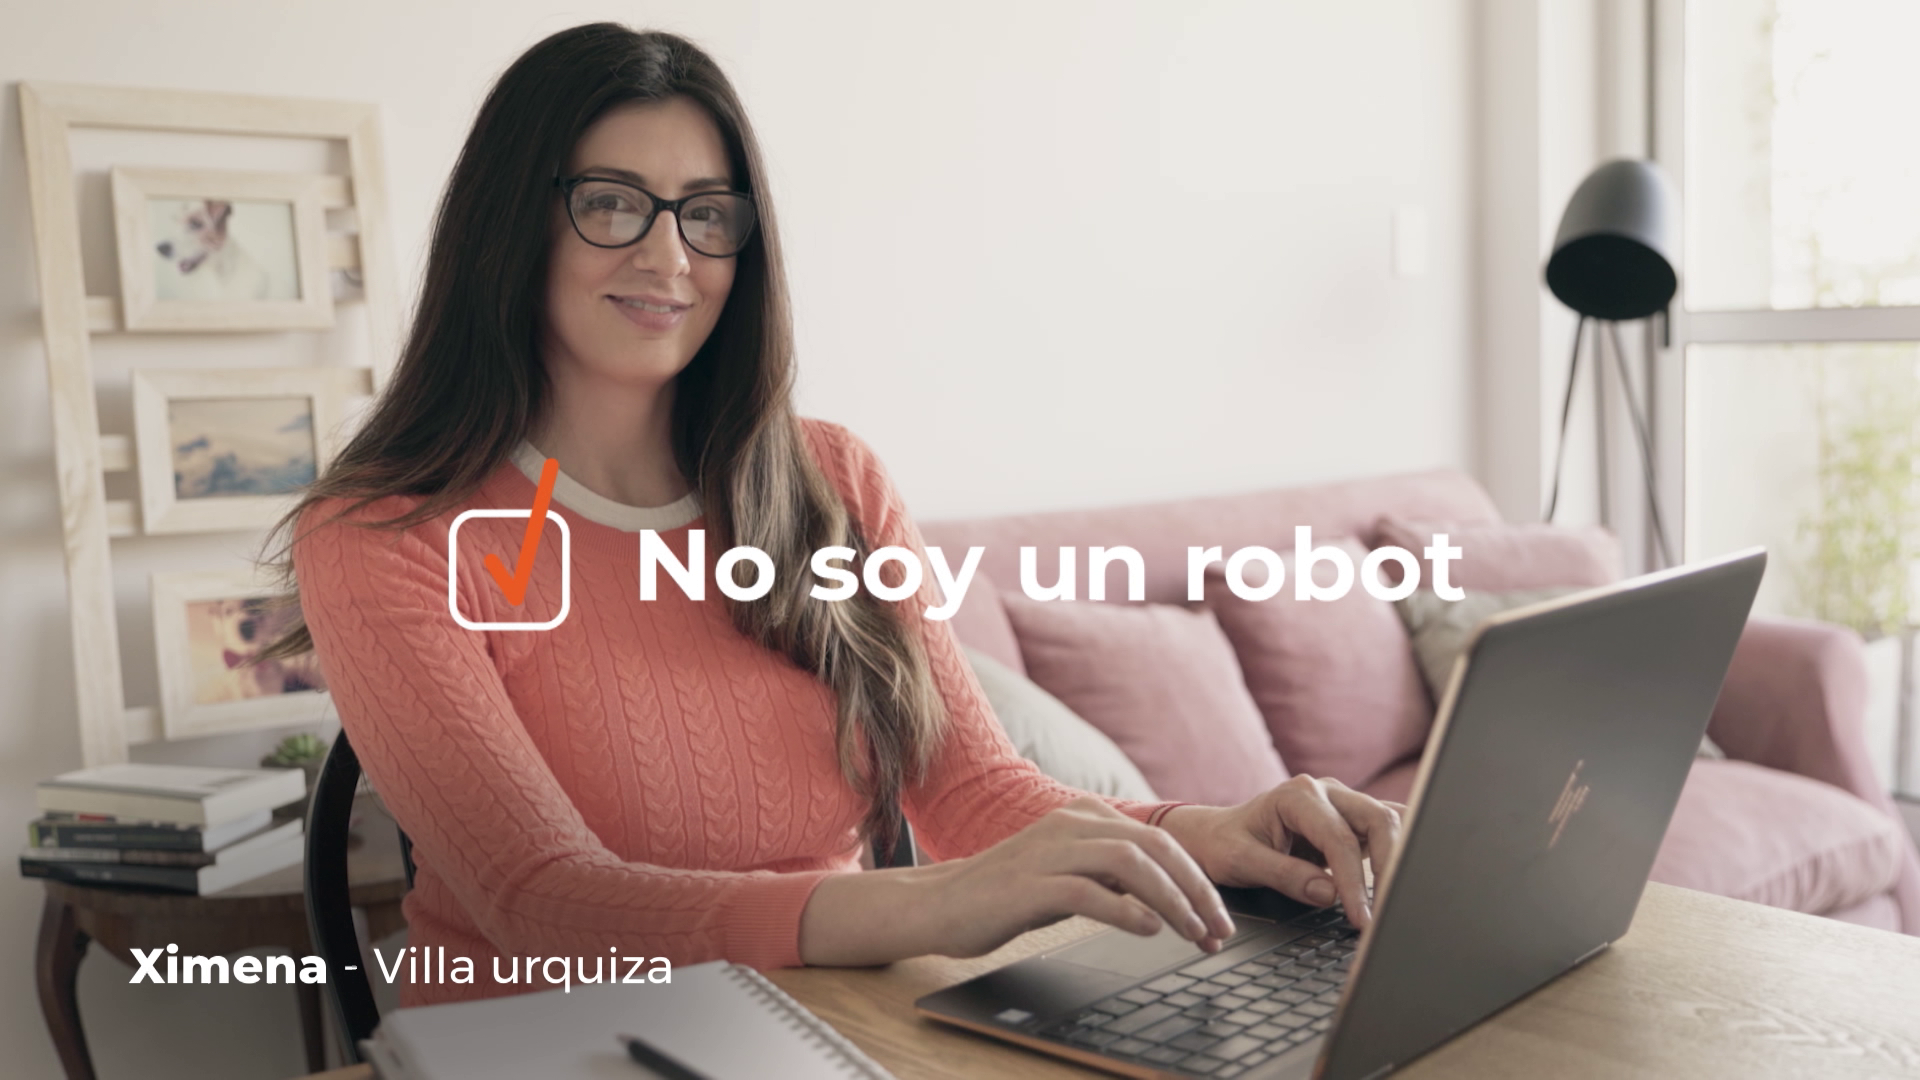 Galicia y Anunciar presentan “No Soy un Robot”